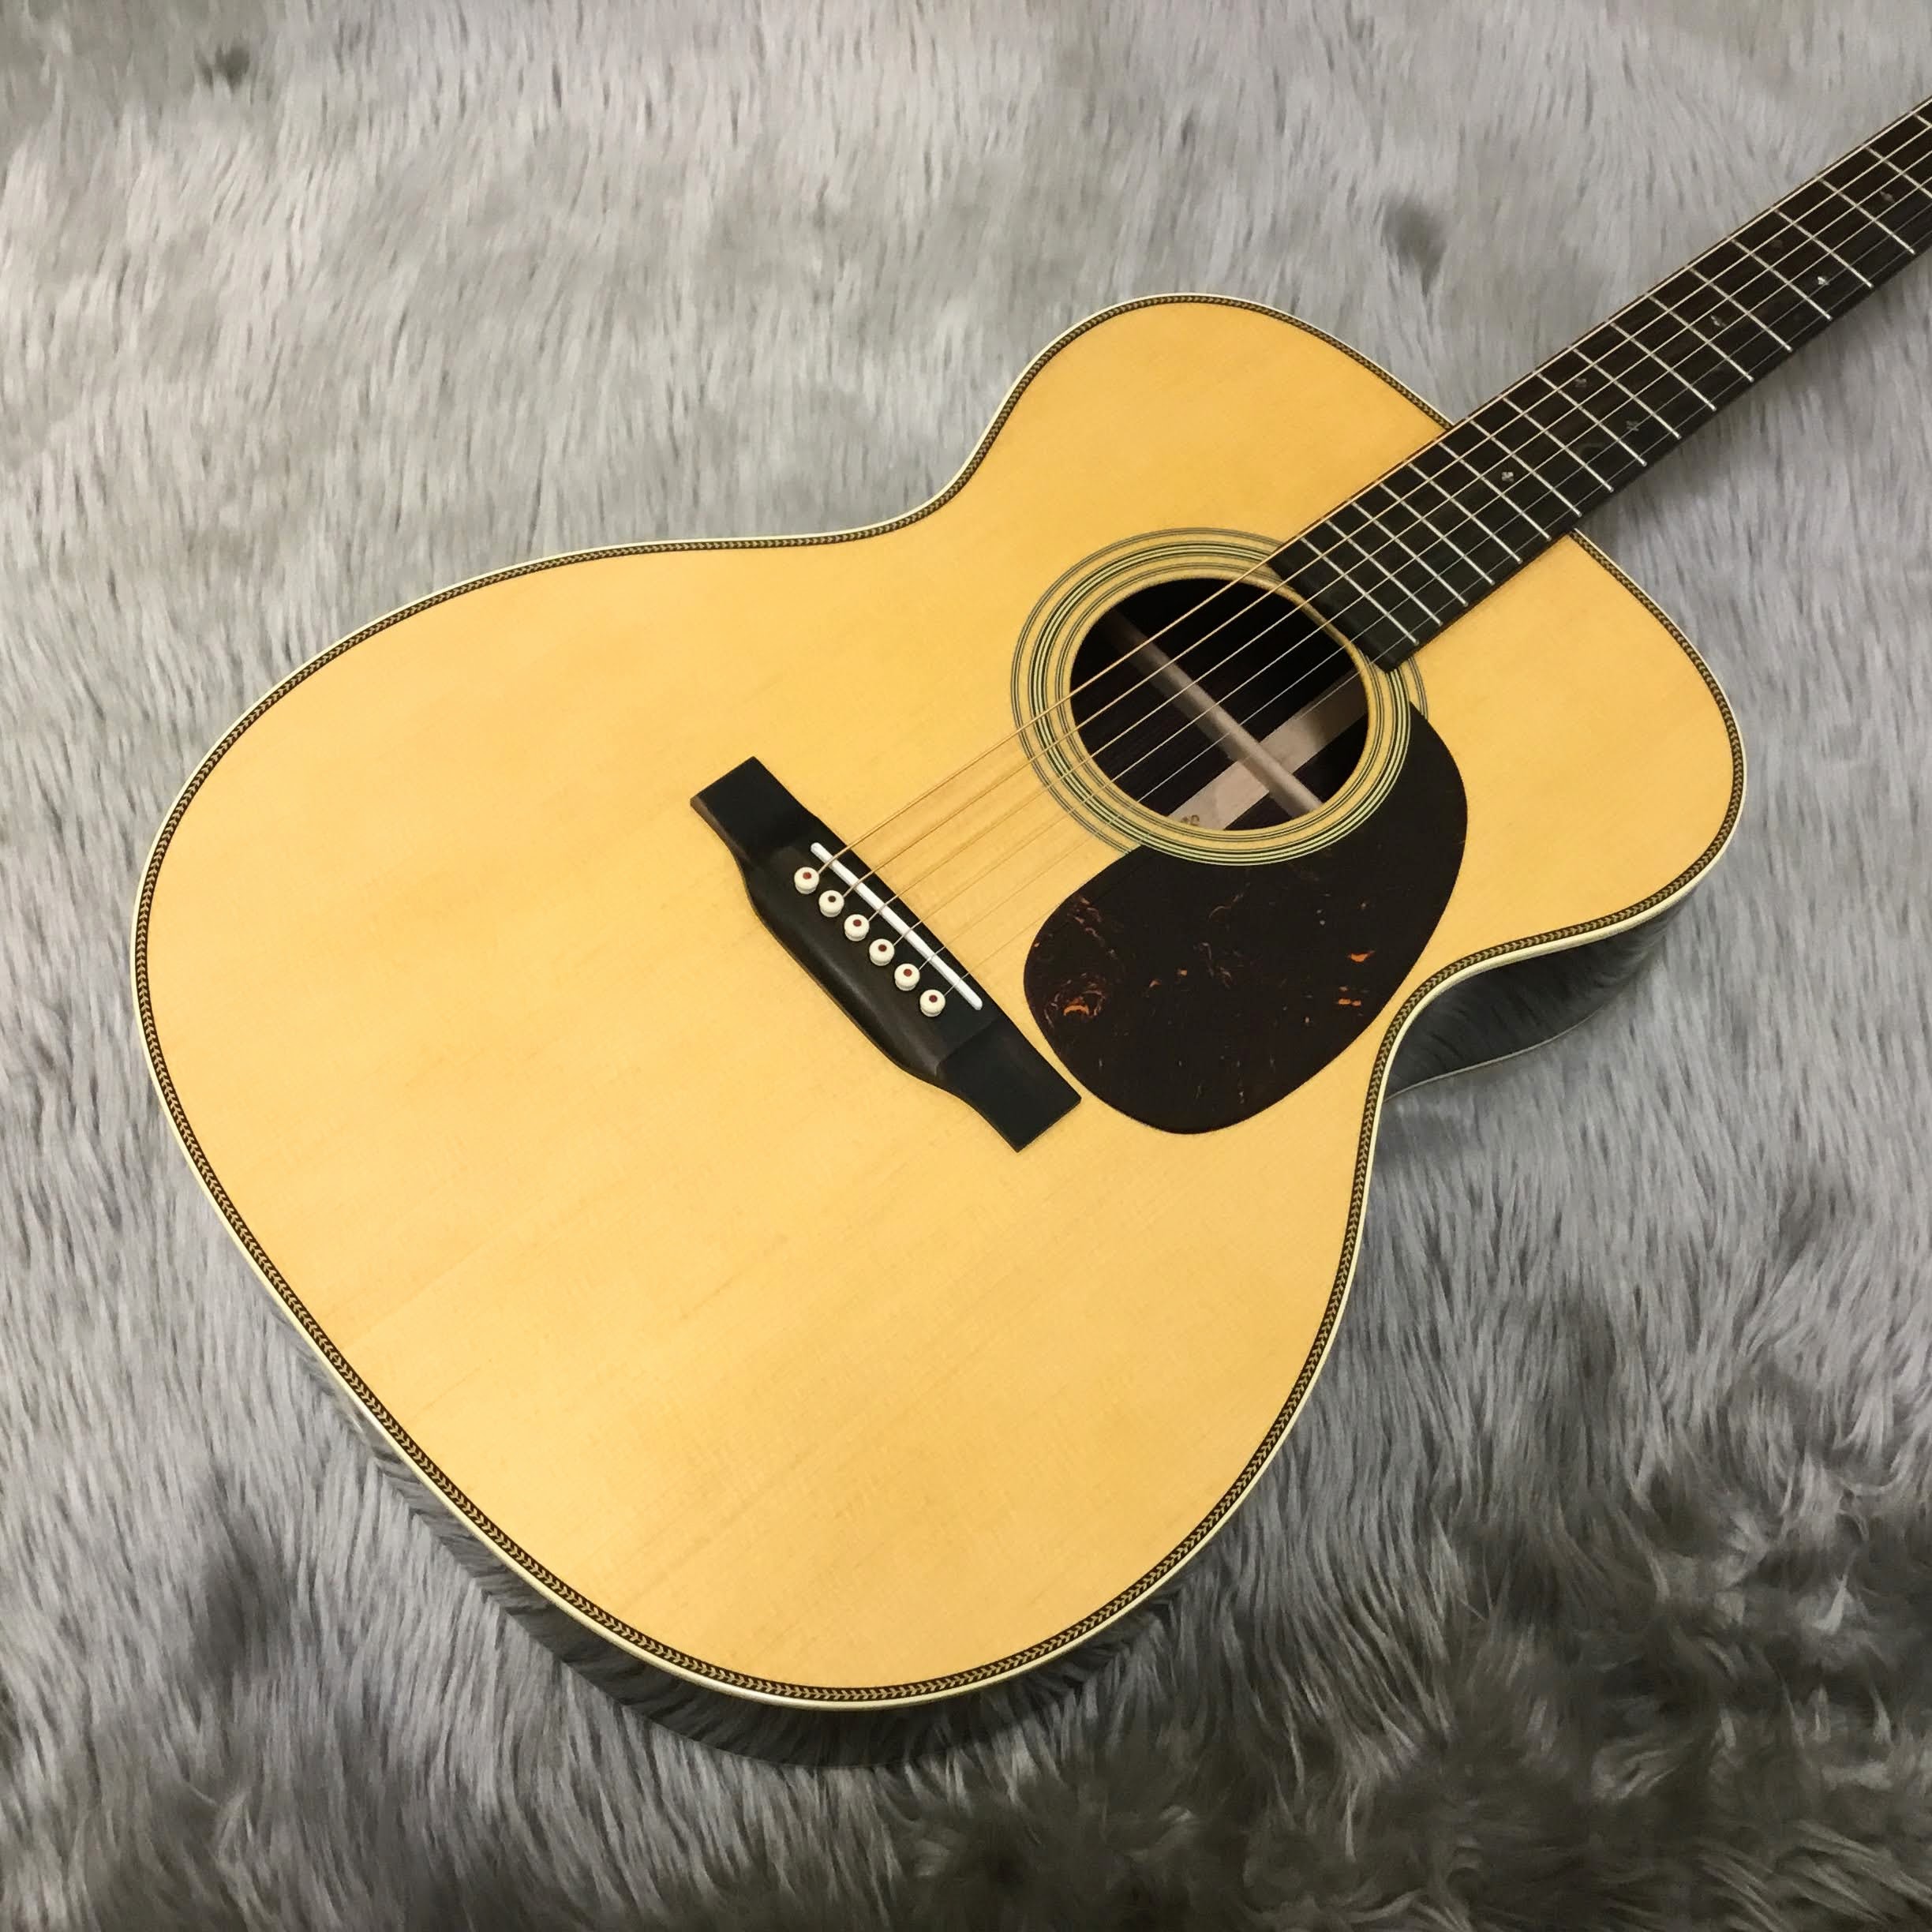 こんにちは！島村楽器ららぽーと甲子園店アコースティックギター担当の和田です！ 本日はMartin『000-28 Standard』が入荷しましたのでご紹介いたします！！！ ギターの詳細はこちらから♪